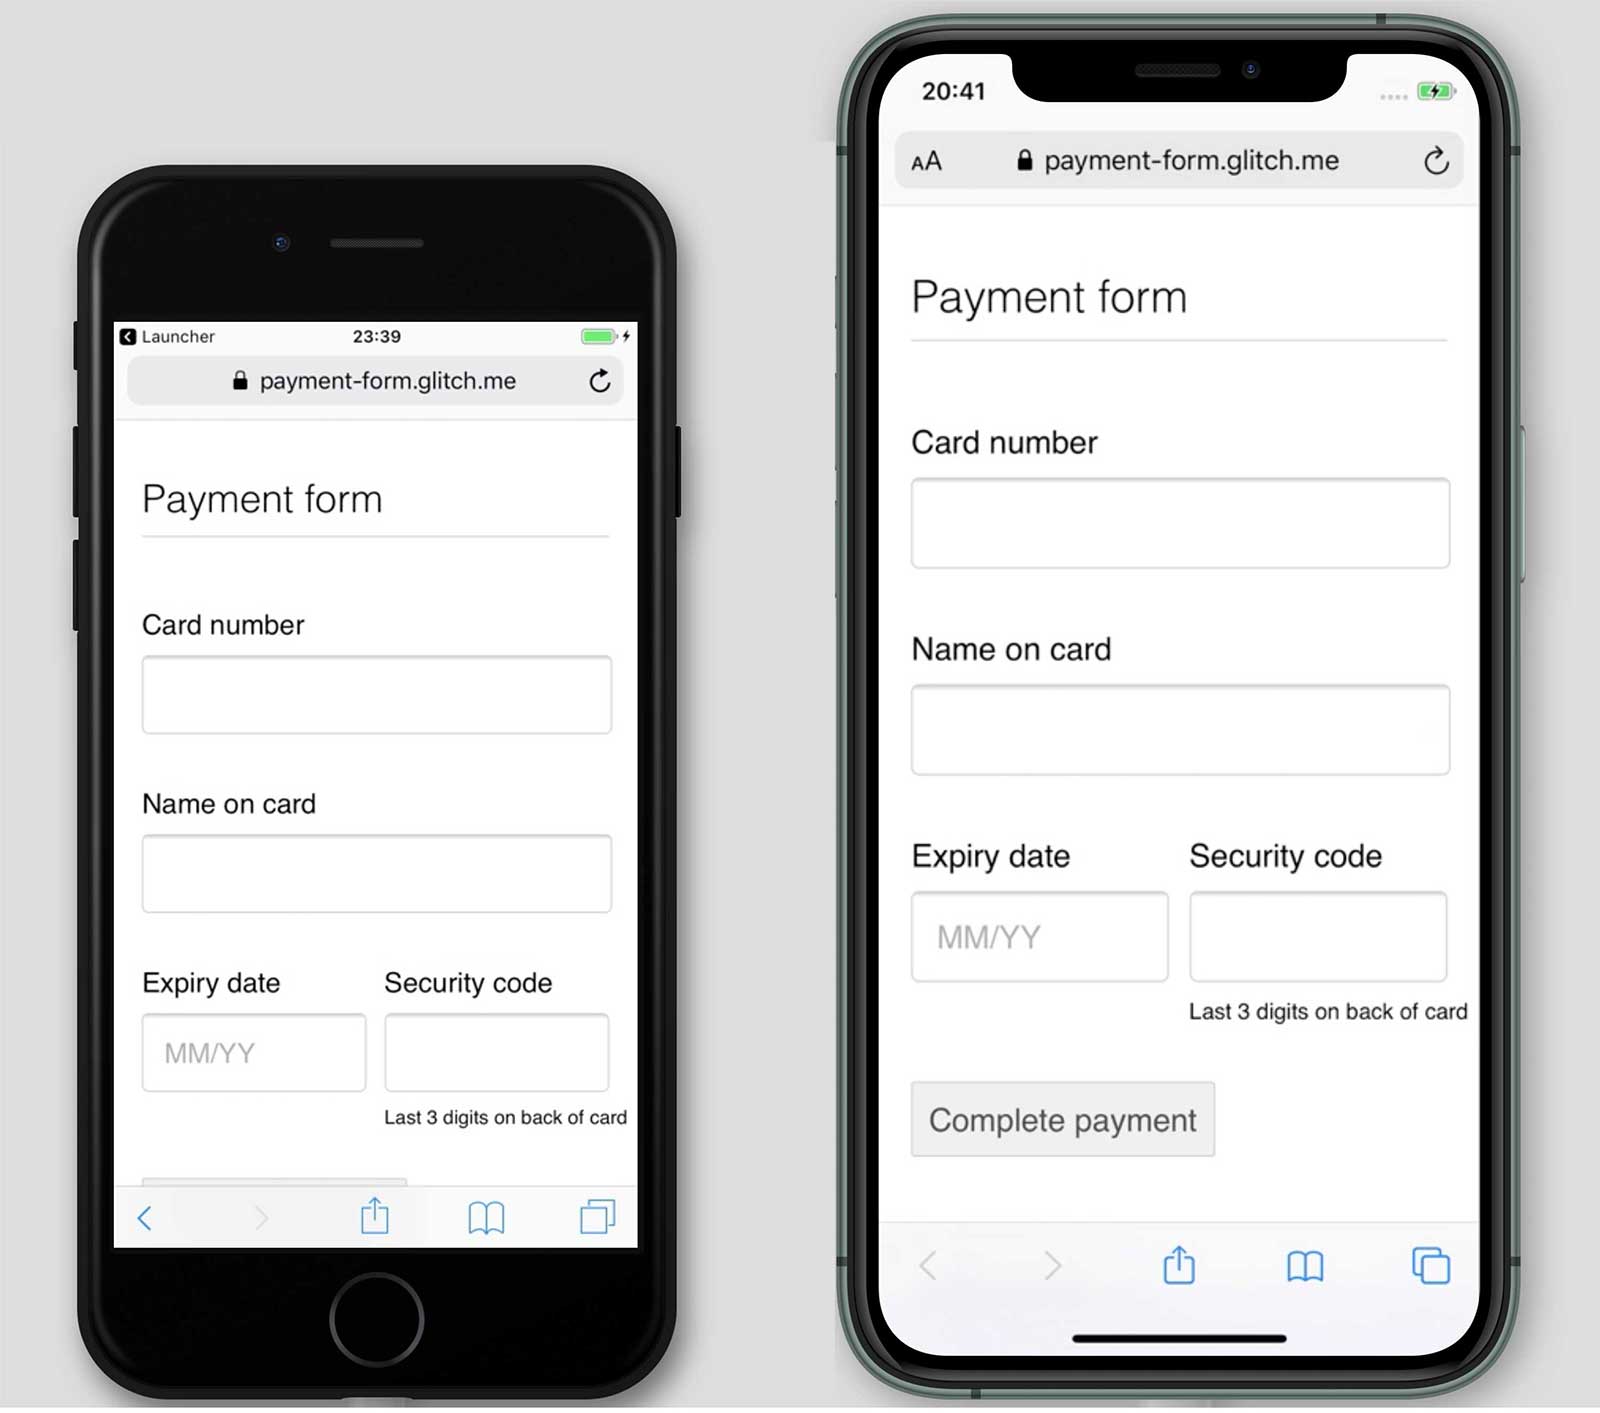 Capturas de pantalla de un formulario de pago, payment-form.glitch.me, en iPhone 7 y 11. El botón Completar pago se muestra en el iPhone 11, pero no en el iPhone 7